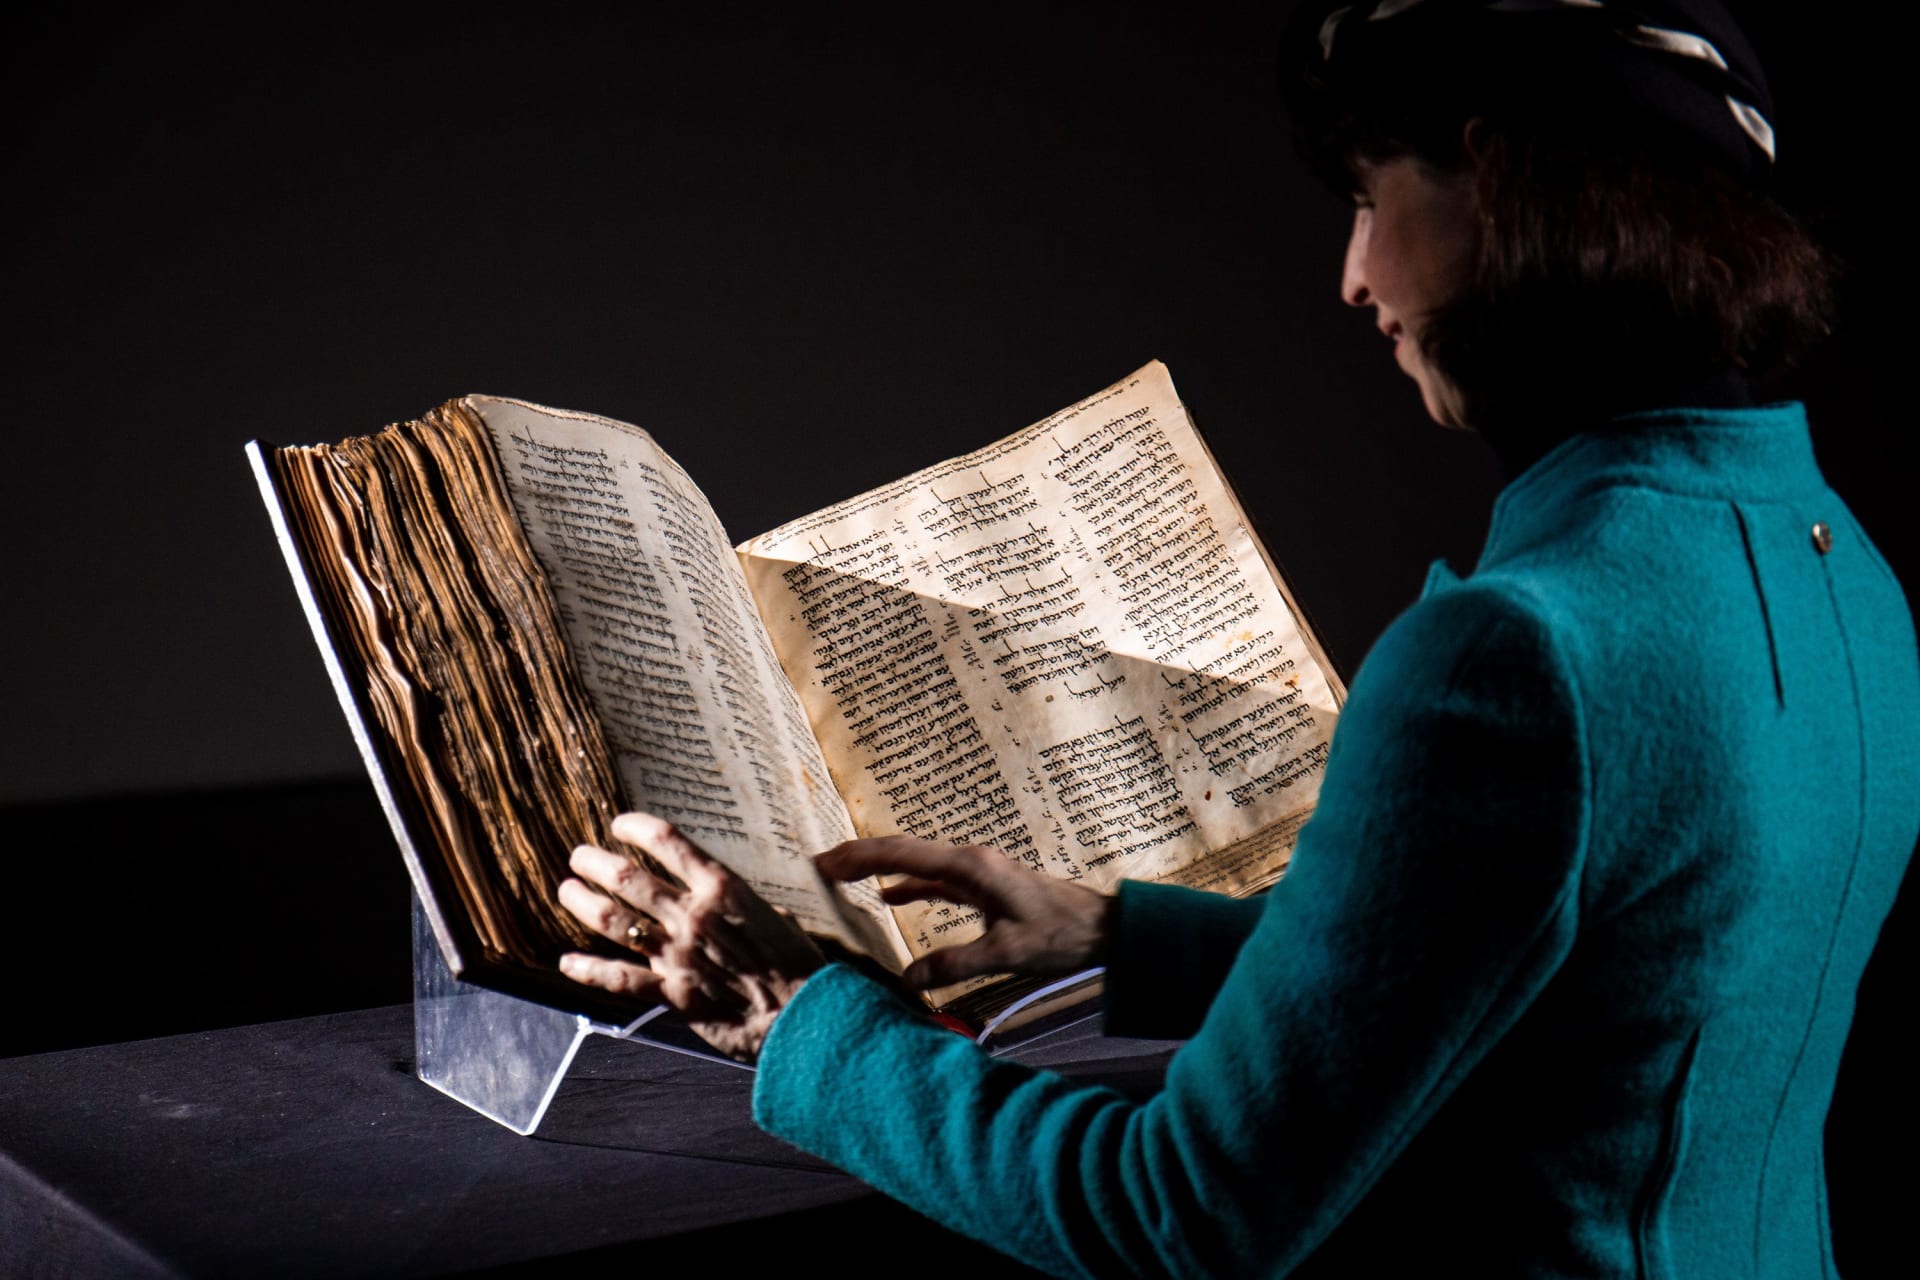 38.1 مليون دولار.. رقم قياسي حققته أقدم نسخة عبرية من الكتاب المقدس الأقدم في العالم